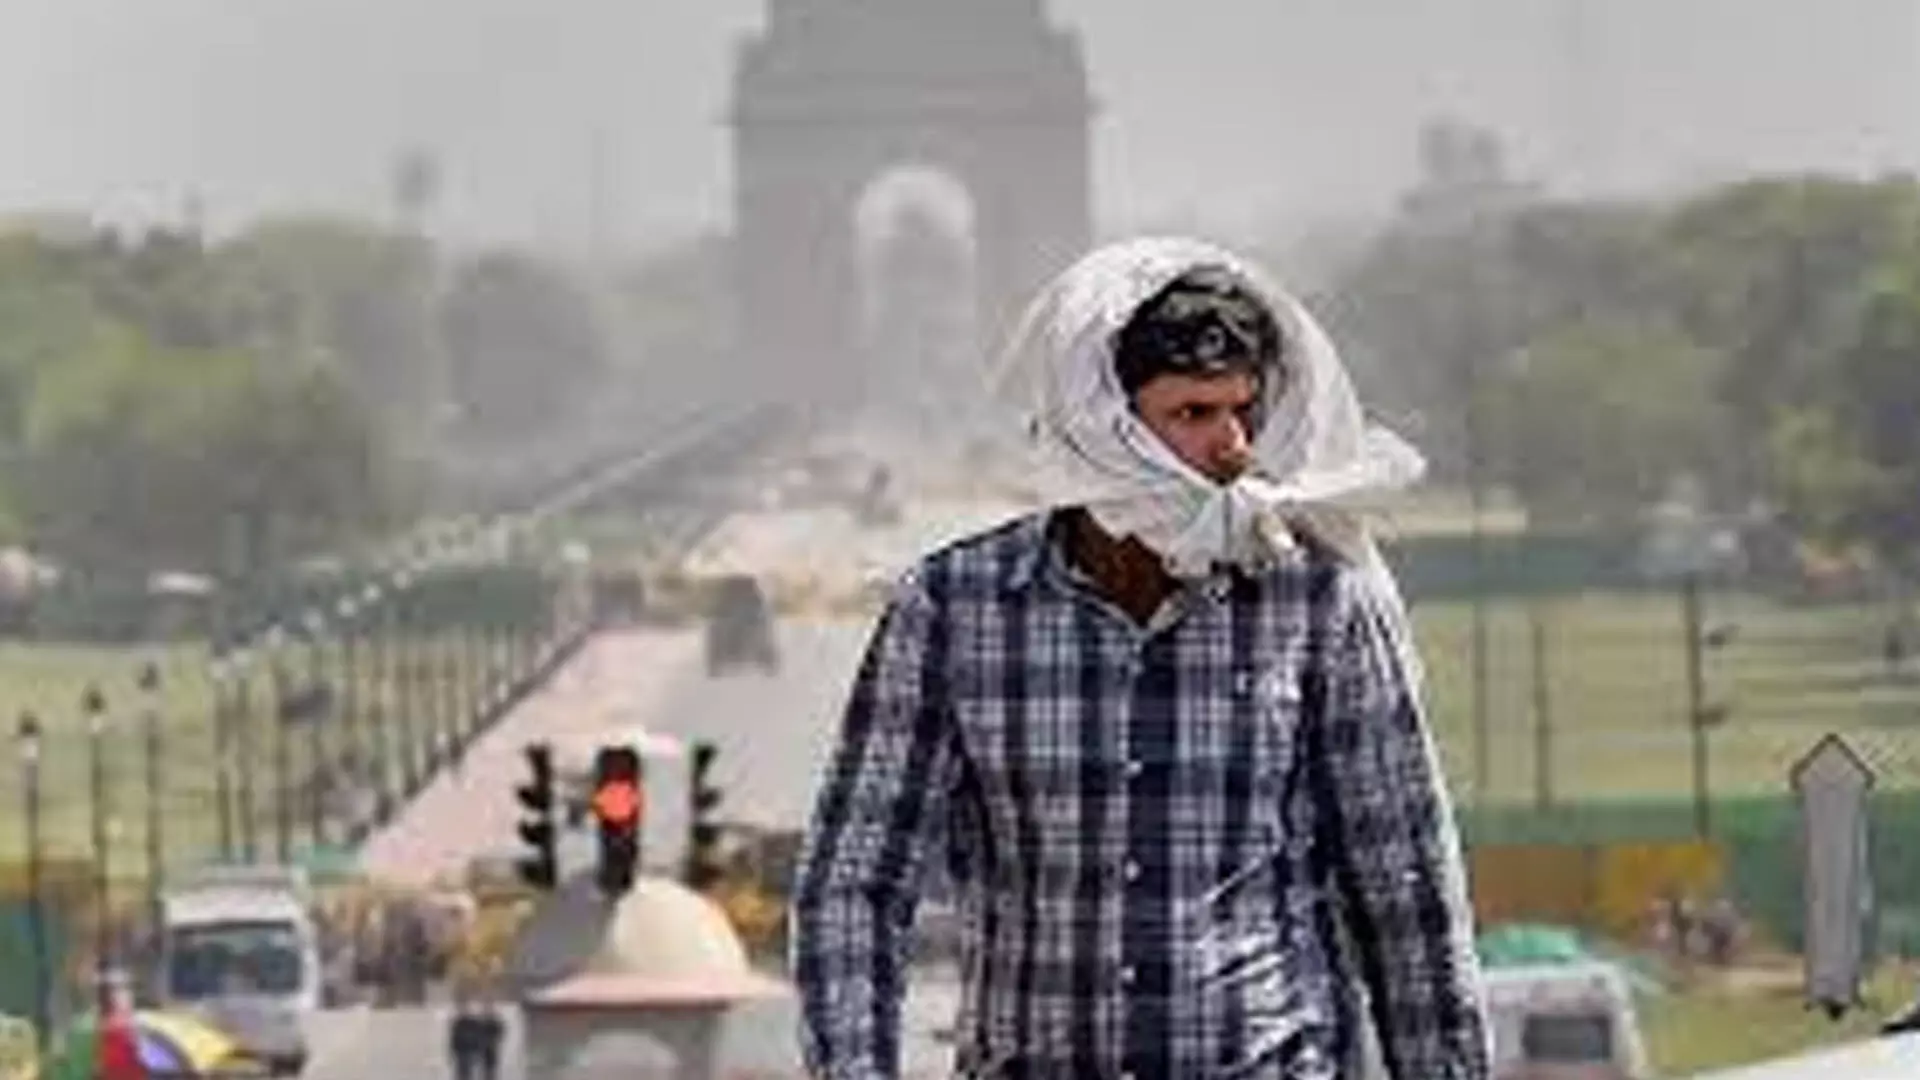 Delhi: दिल्ली में भीषण गर्मी के कारण तापमान 50 डिग्री सेल्सियस से अधिक हो गया